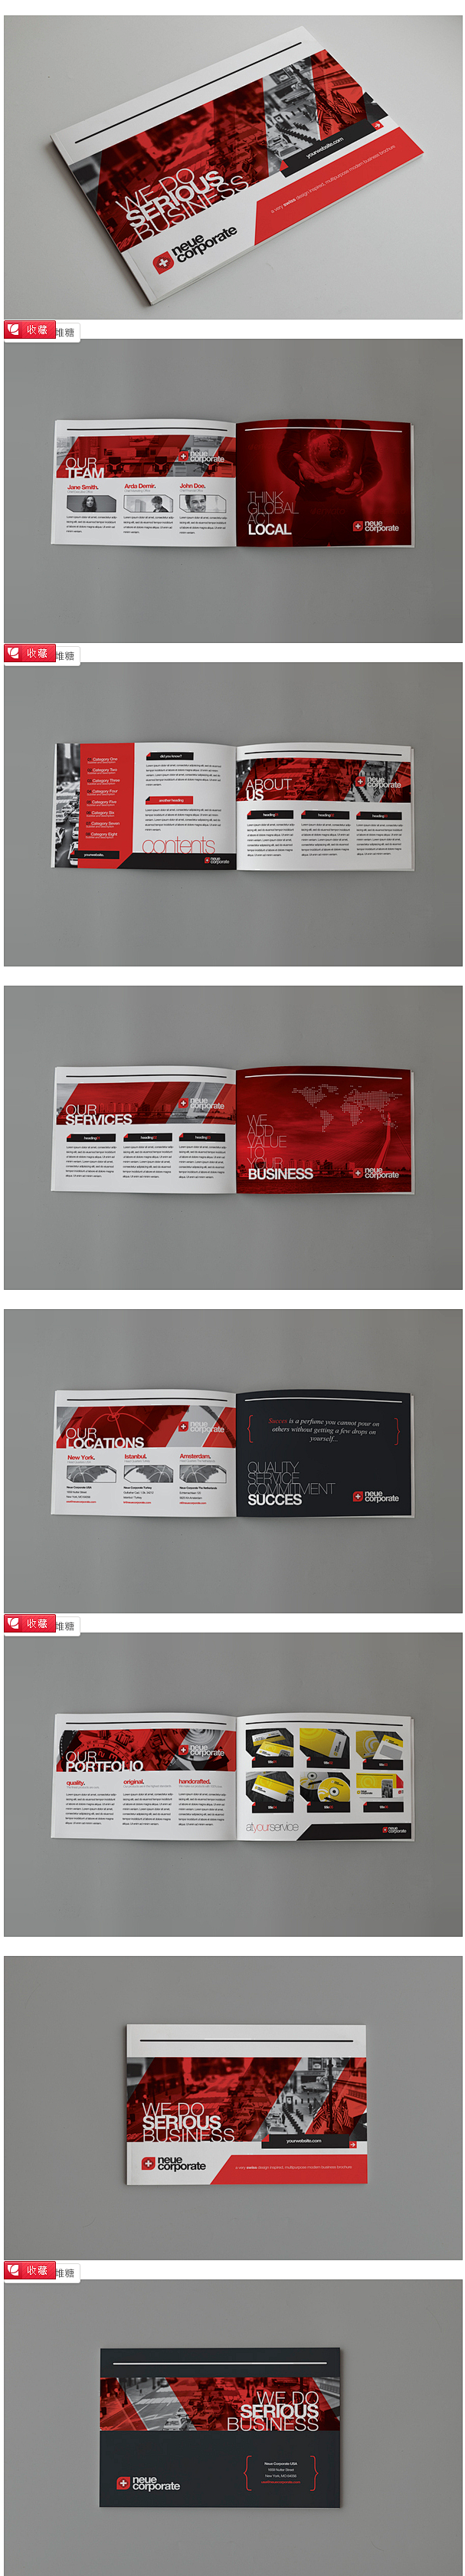 RW瑞士风格的宣传册欣赏_画册设计_设计...